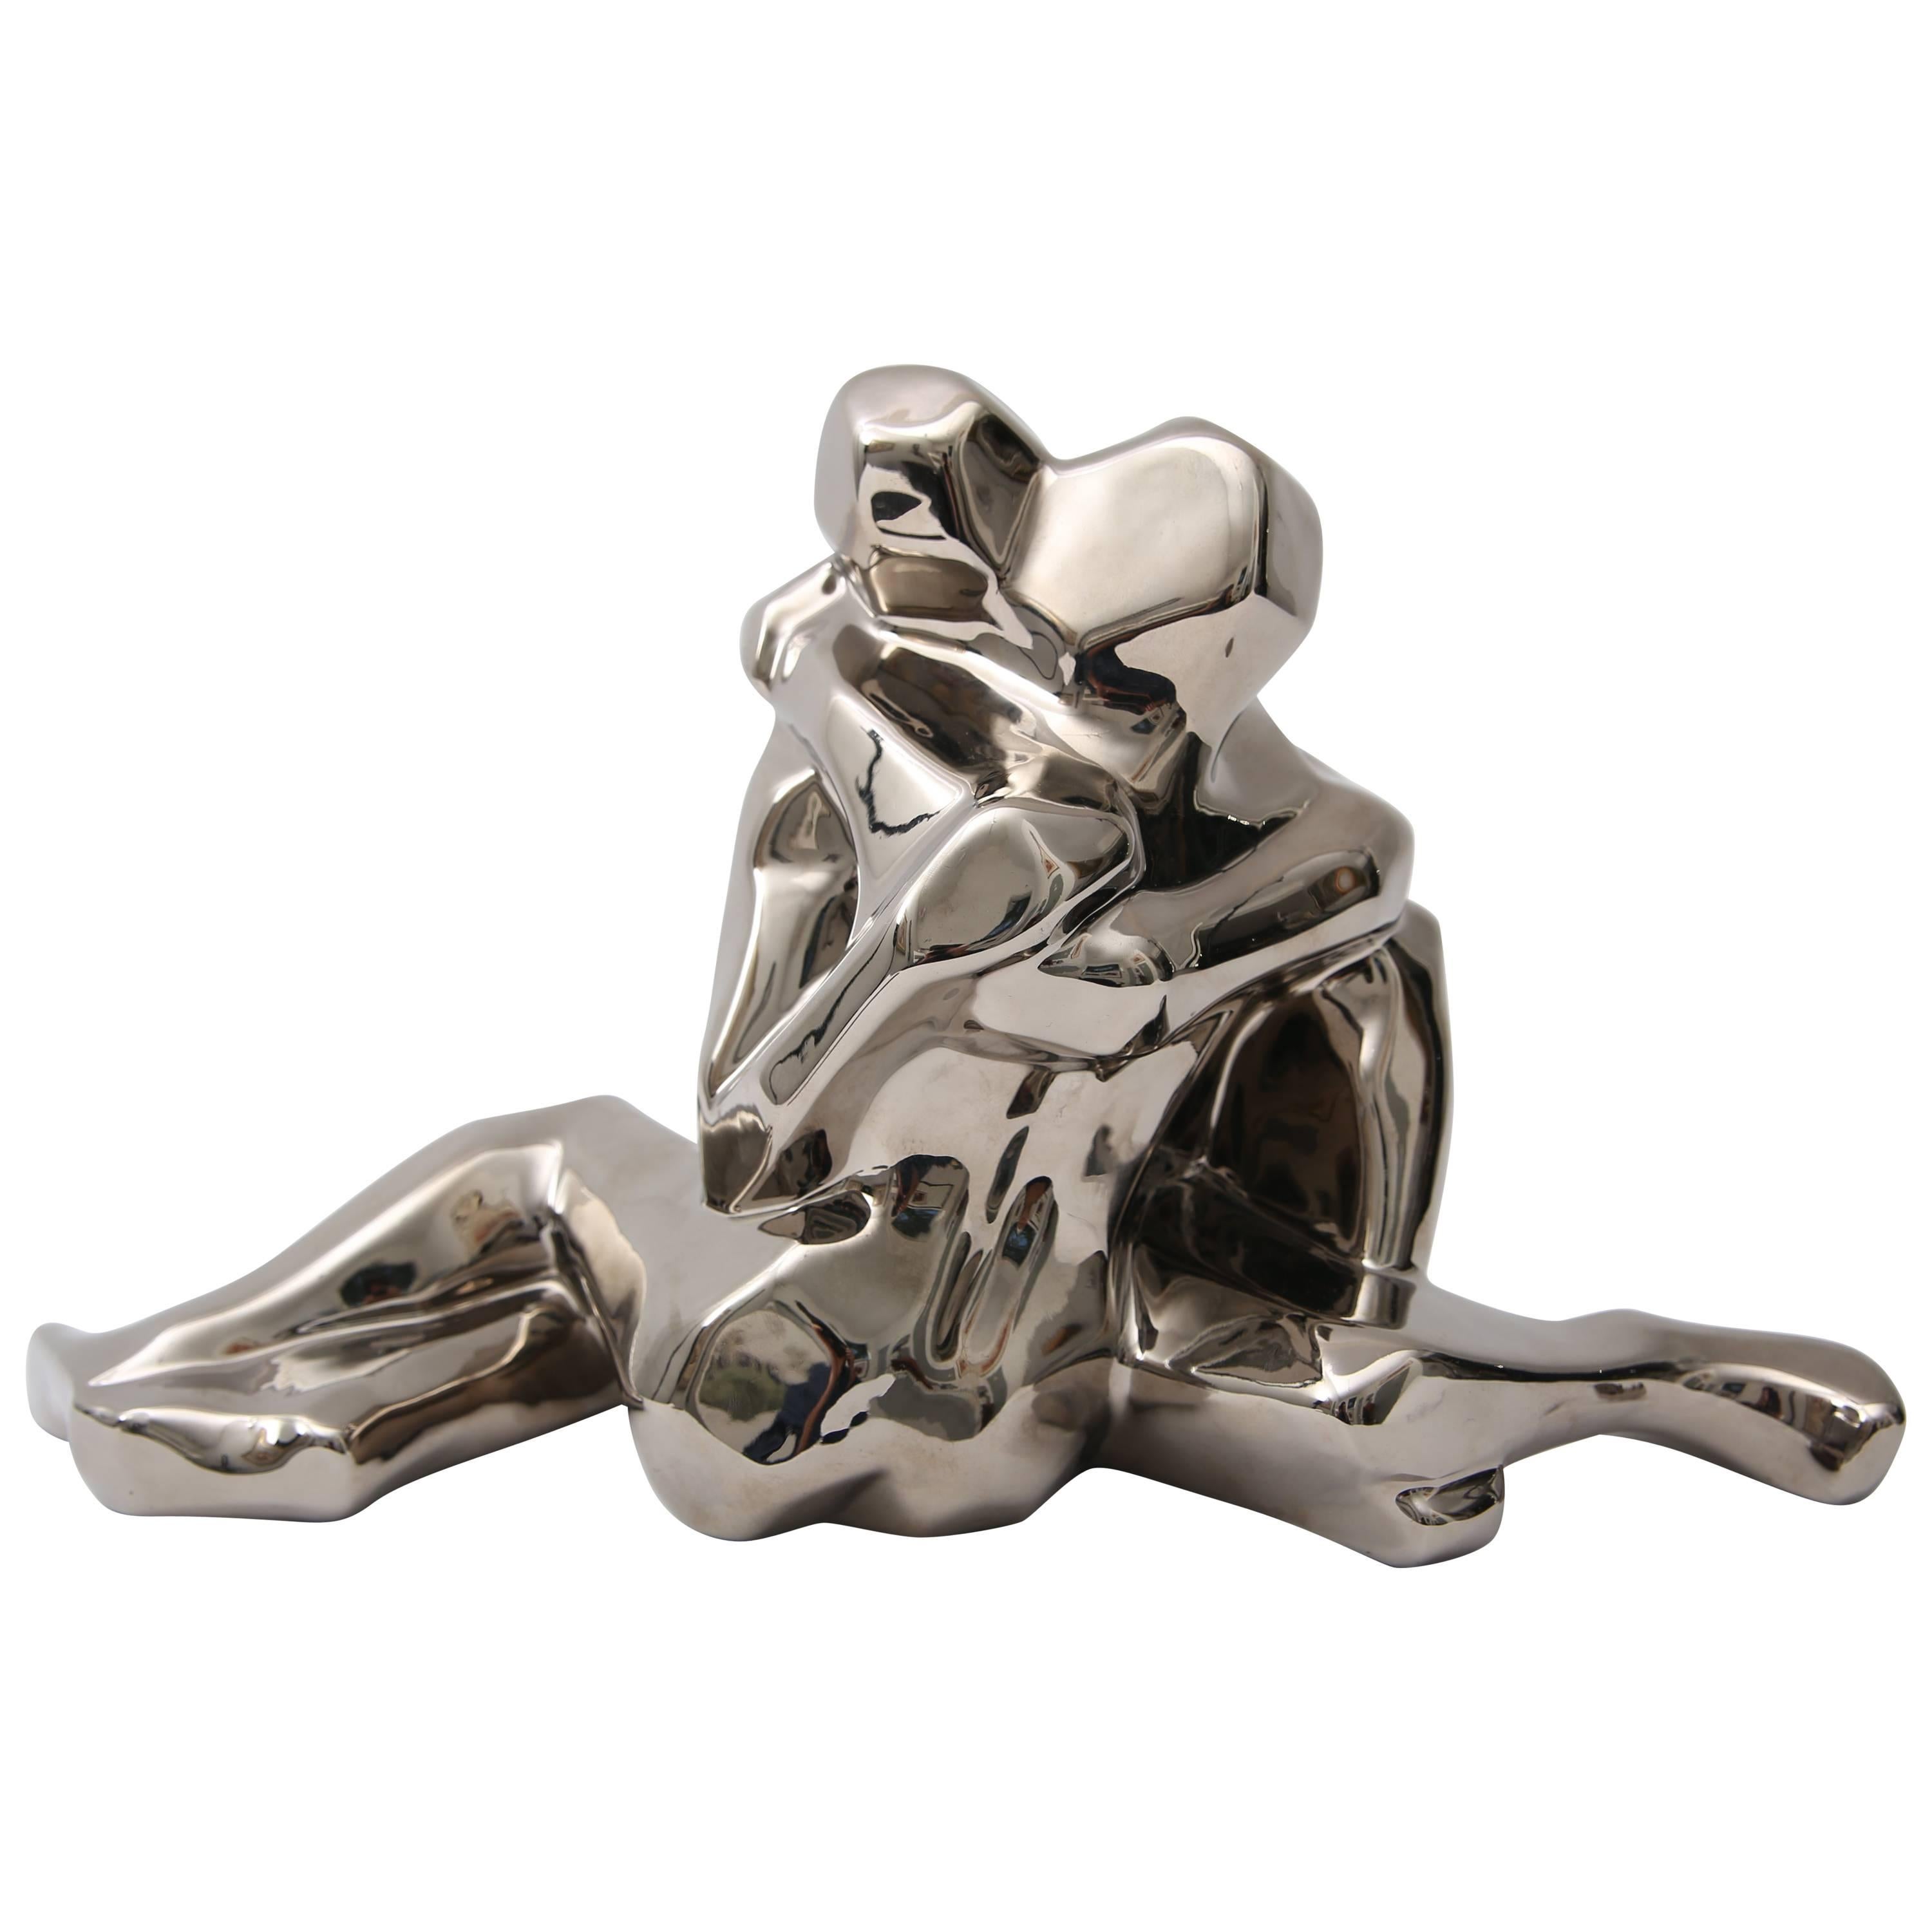  Jaru Figural Sculpture in Platinum